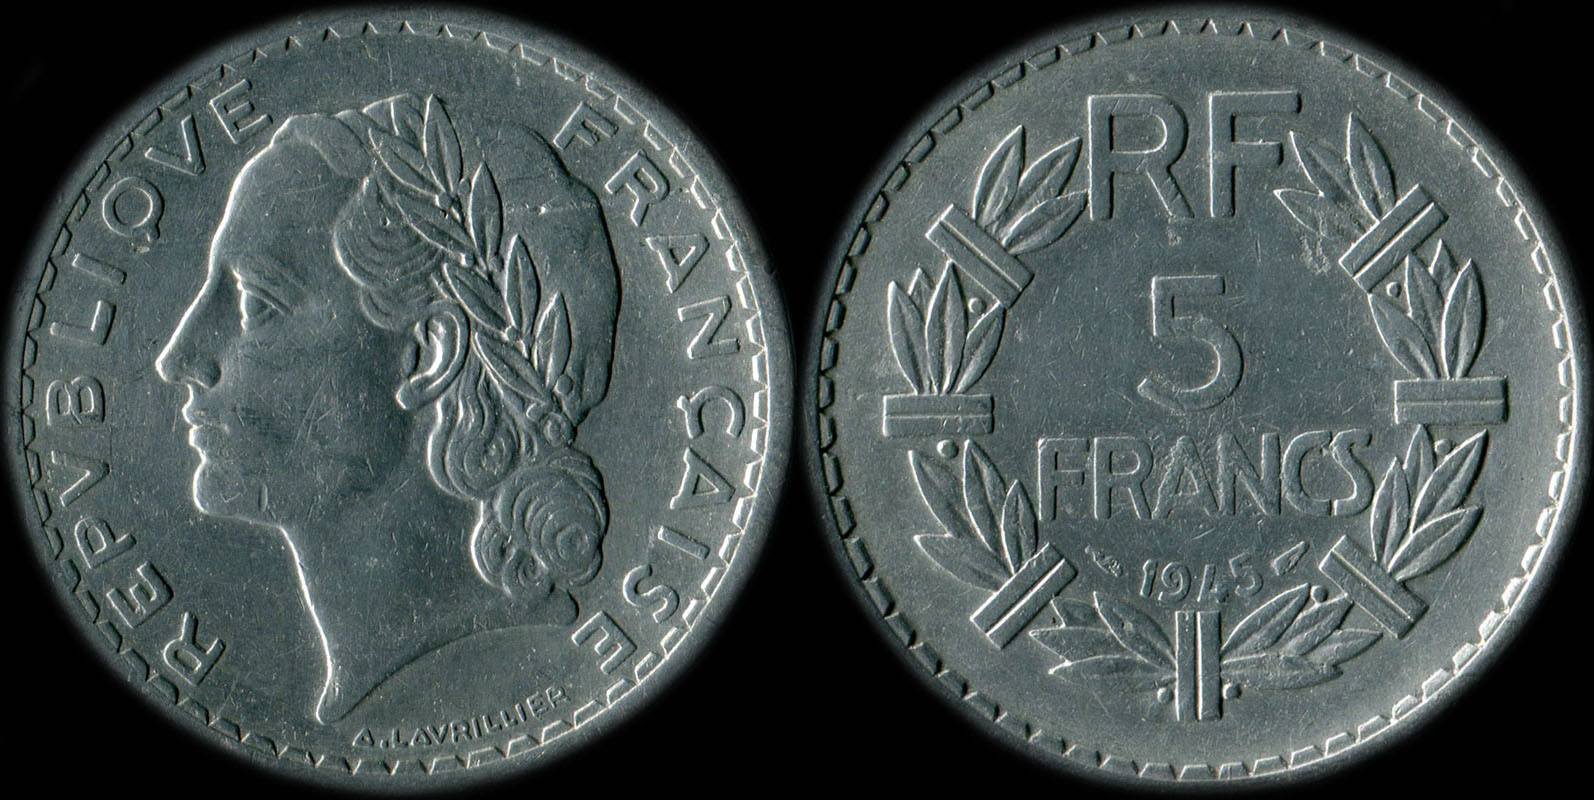 Pice de 5 francs Lavrillier 1945 aluminium